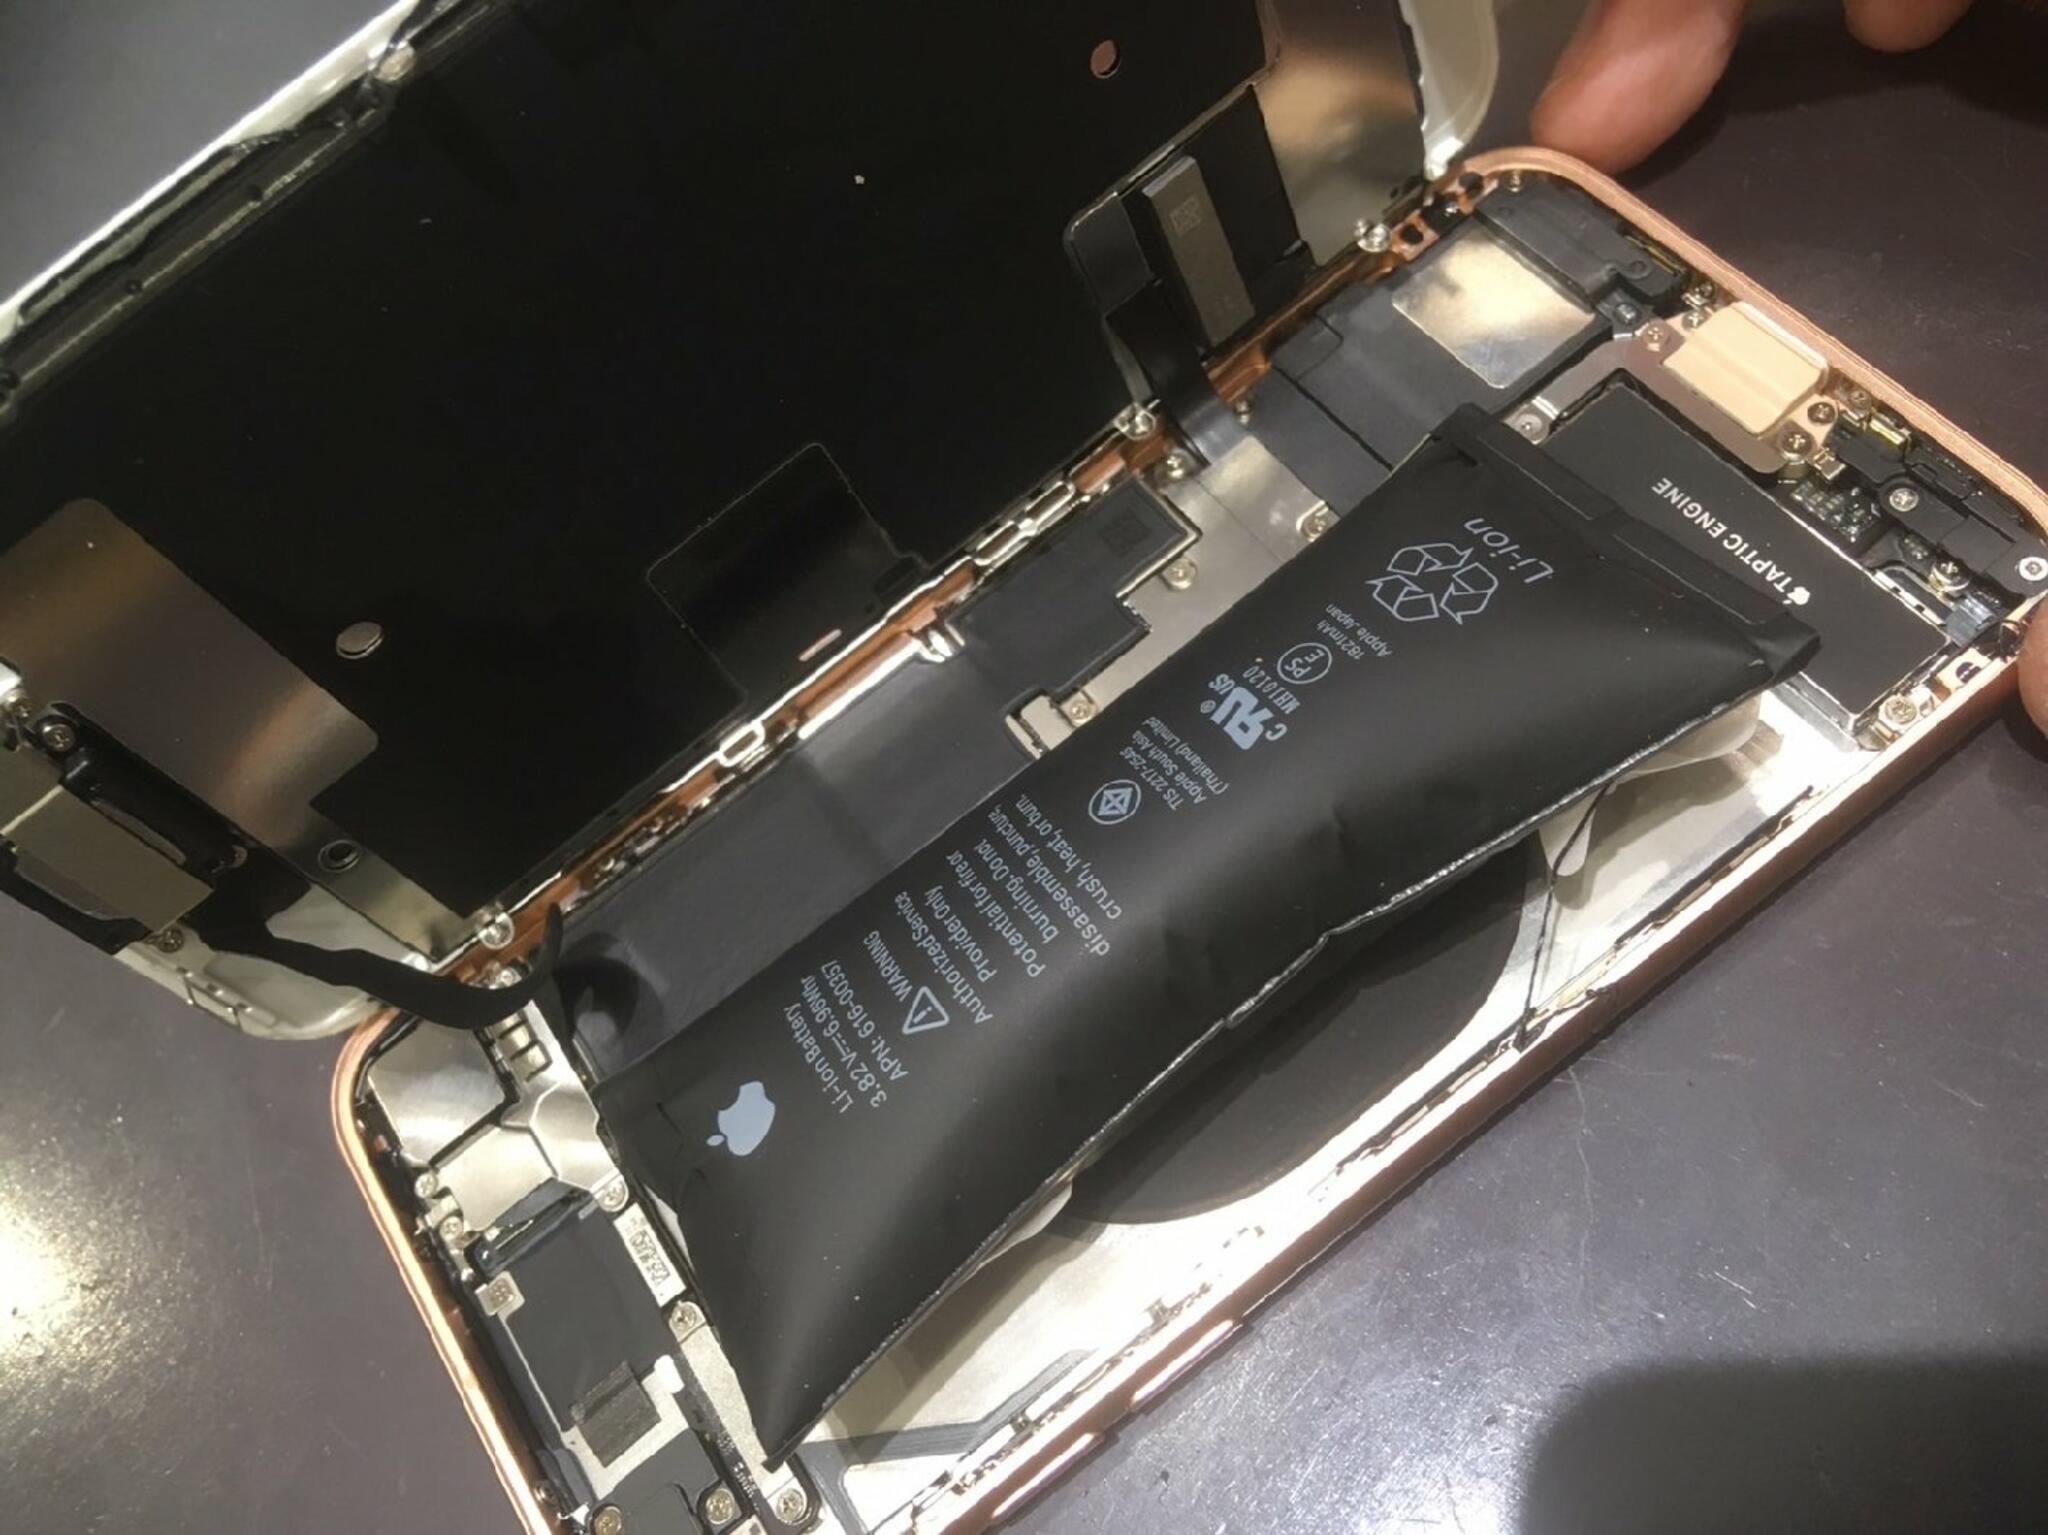 iPhone・iPad・Switch修理店 スマートクール イオンモール広島祇園店からのお知らせ(夏での充電のし過ぎに注意しましょう)に関する写真